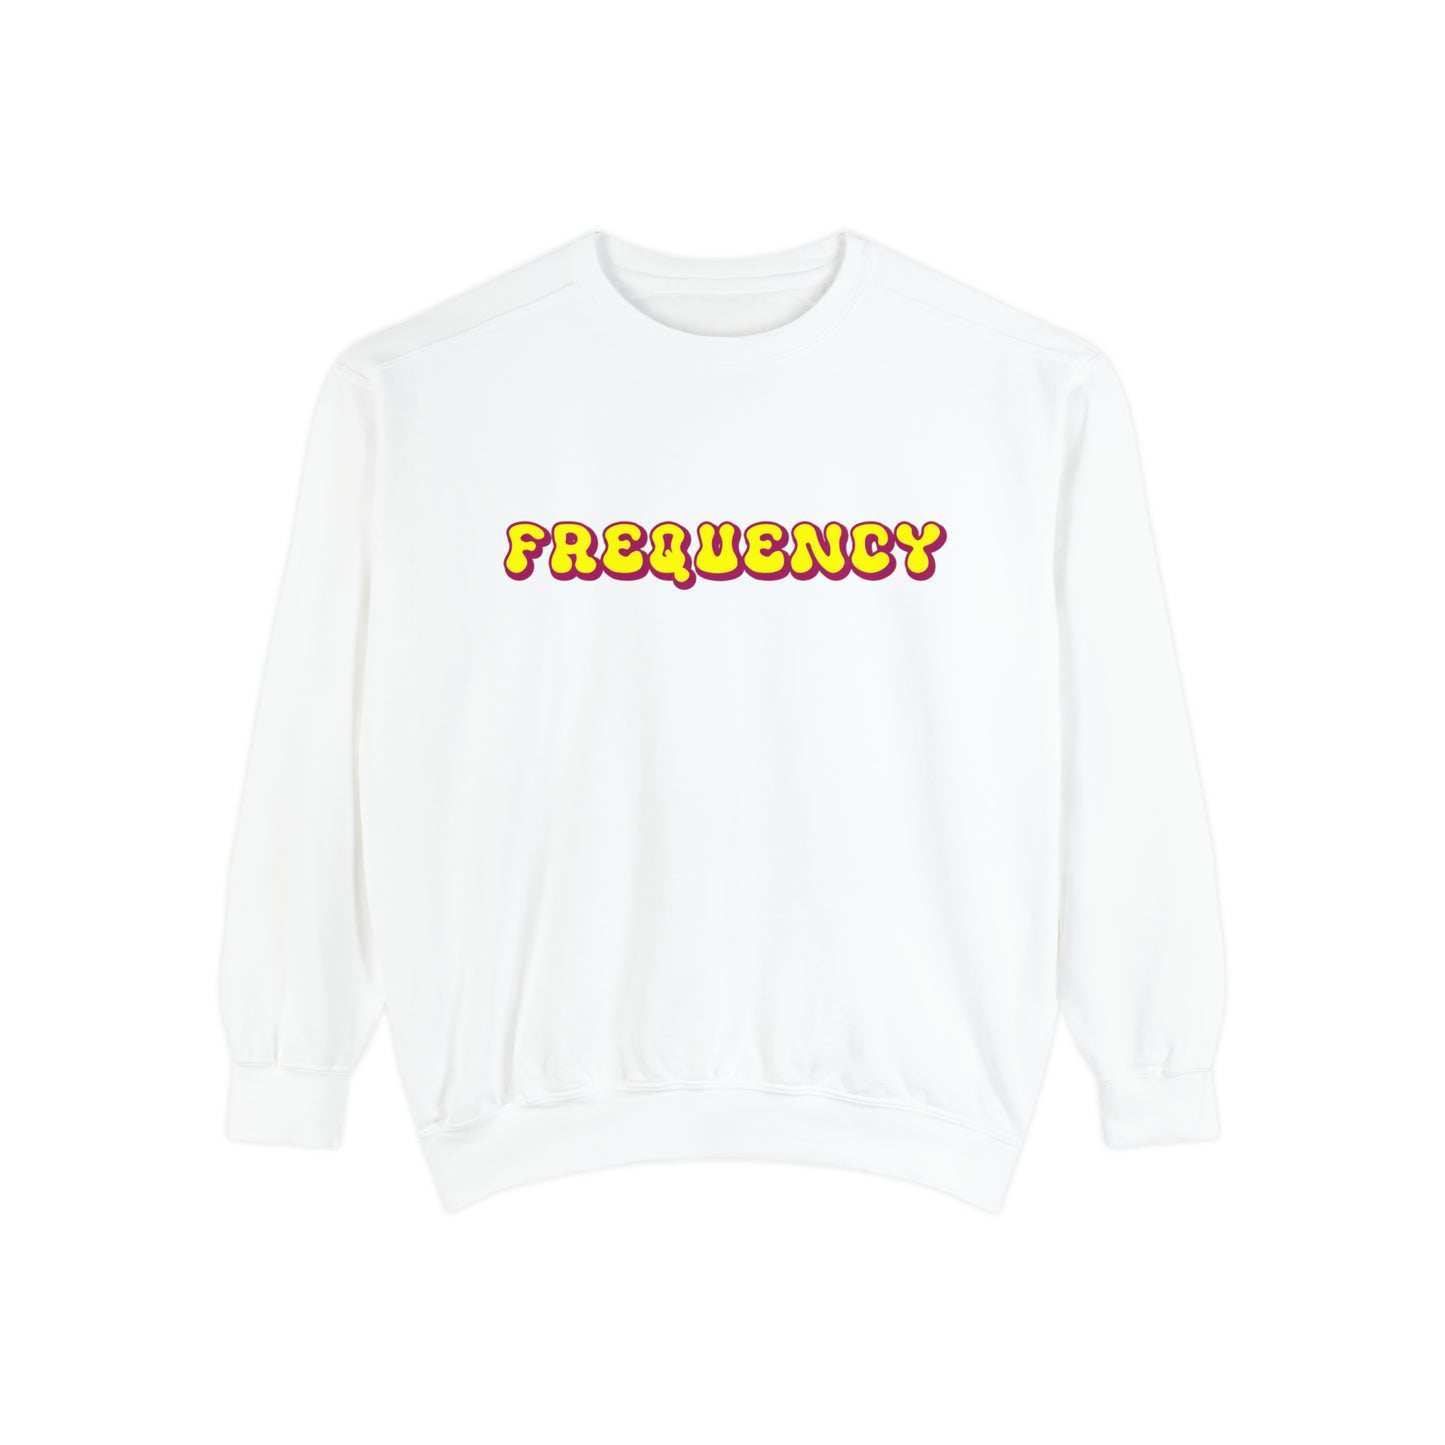 Frequency Sweatshirt